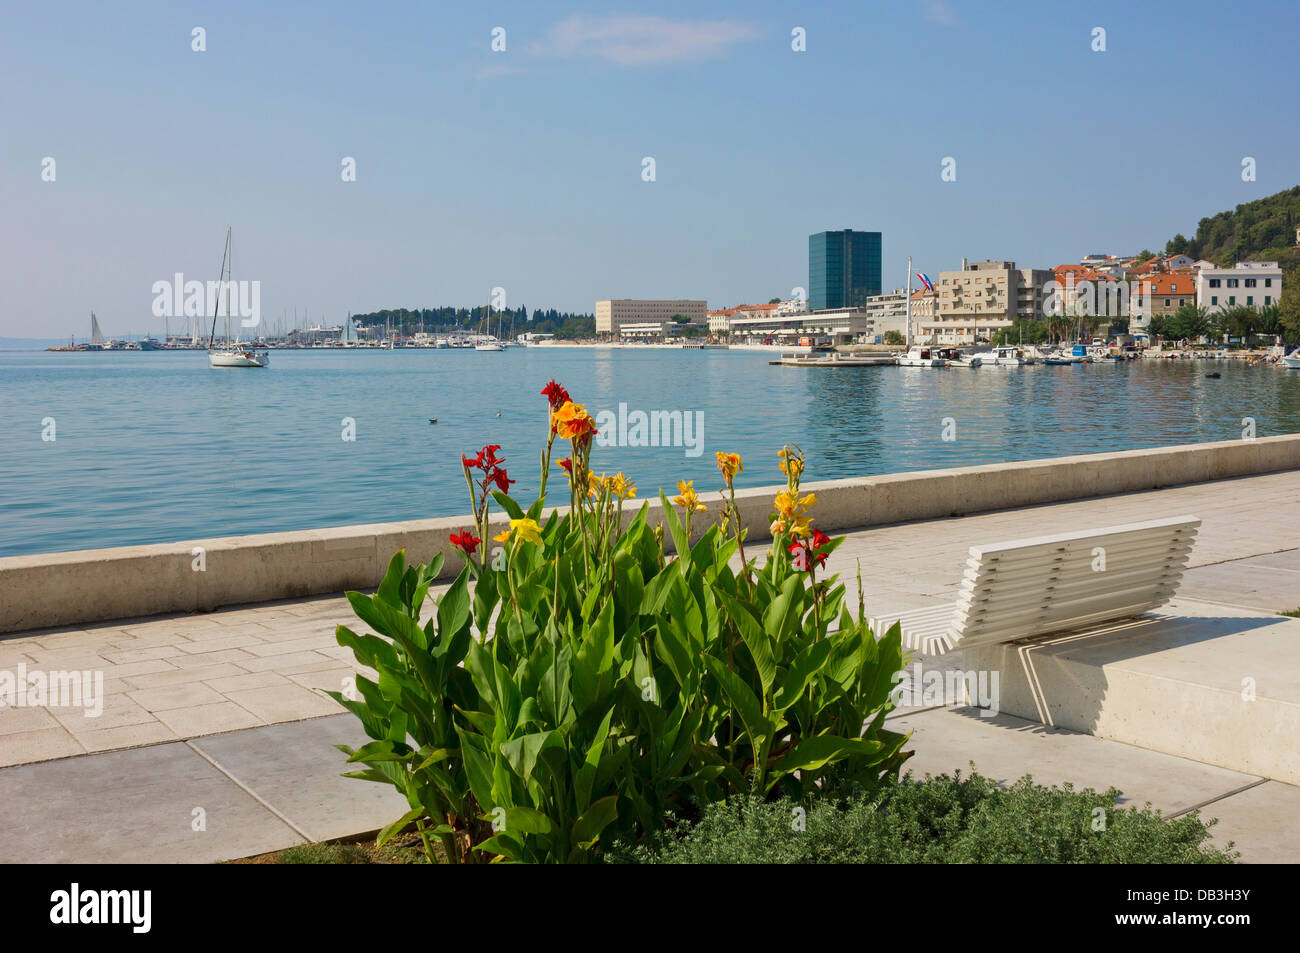 Einen Panoramablick auf die Riva Waterfront in Split, Kroatien mit bunten Blumen, einer Bank und Segelbooten in der Marina. Stockfoto